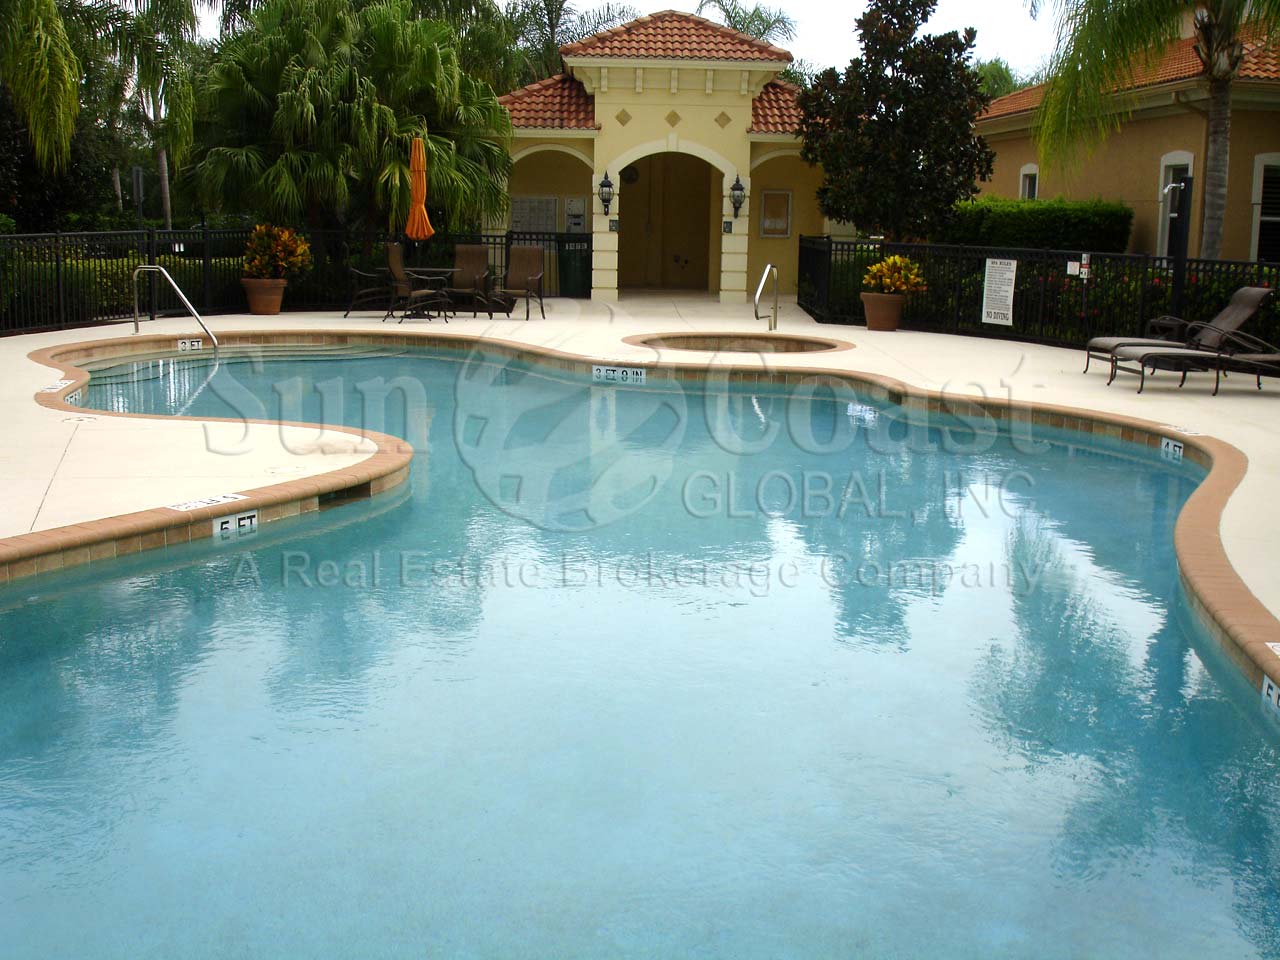 Montelena community pool